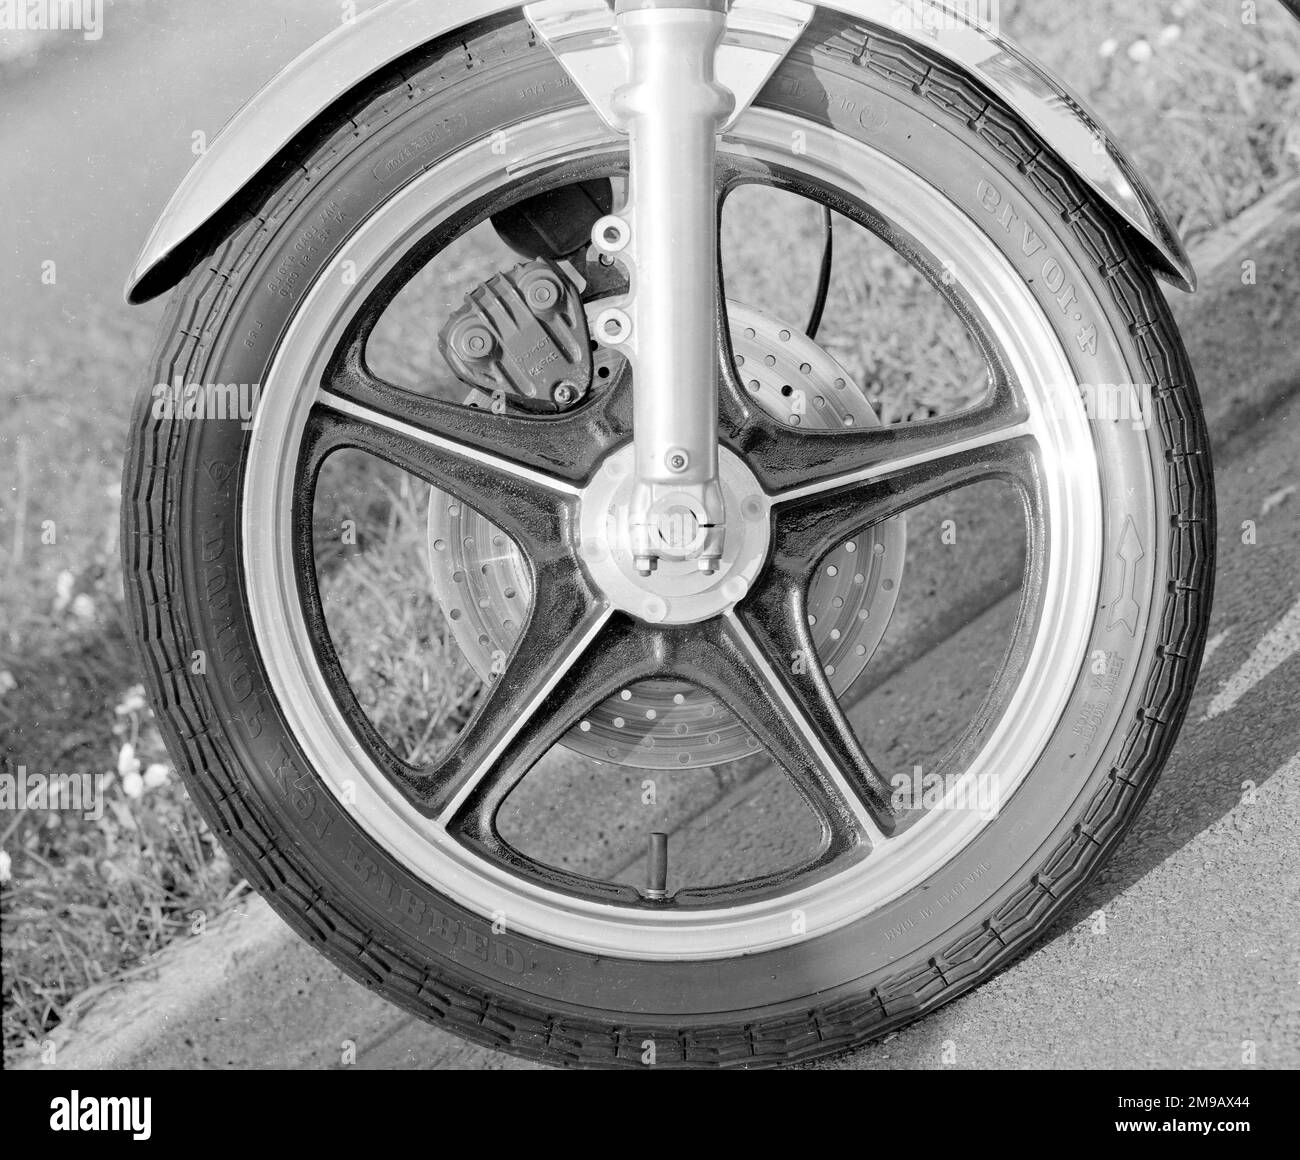 Kawasaki 500 Mach III motorcycle front wheel. Stock Photo